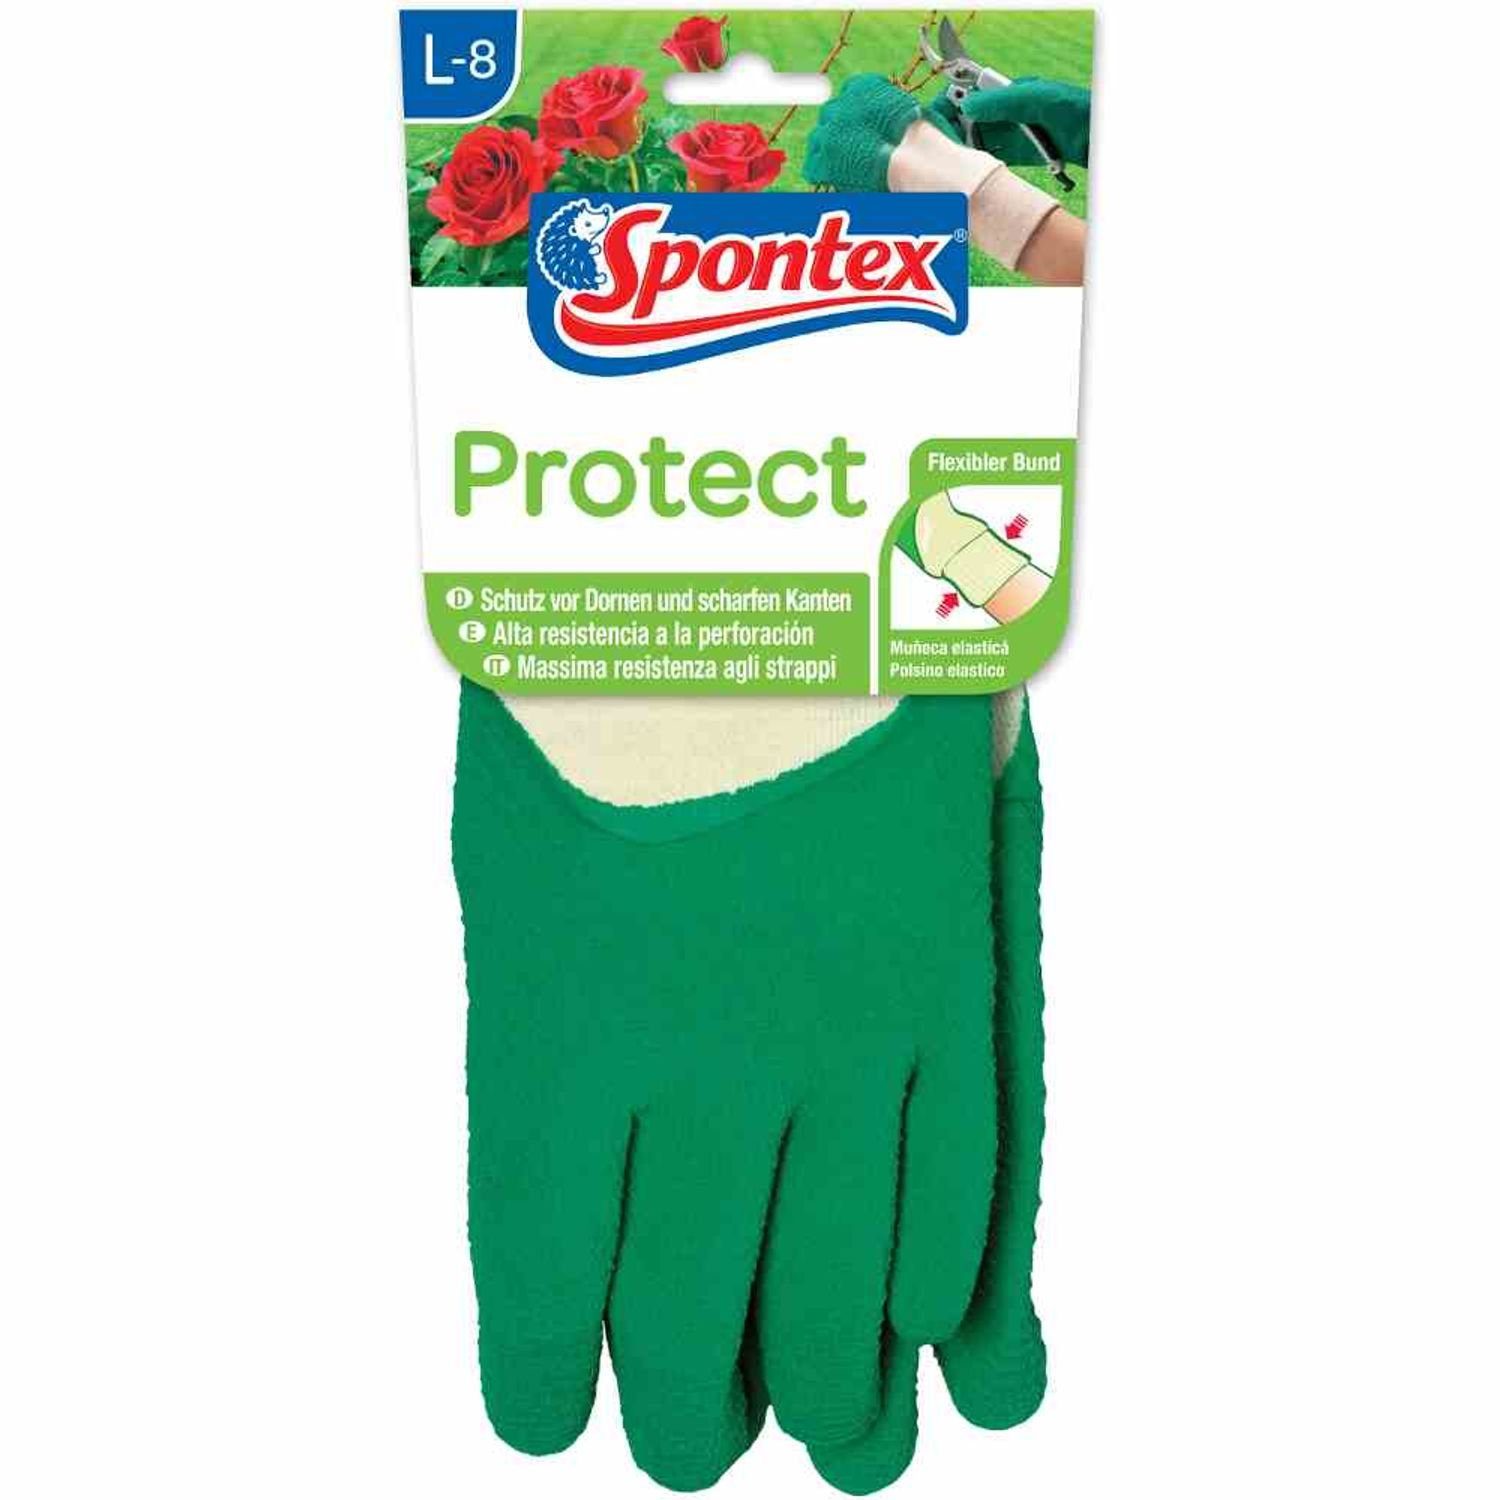 Protect SPONTEX Gartenhandschuhe 8 Gartenhandschuh Schutzhandschuh Gr.